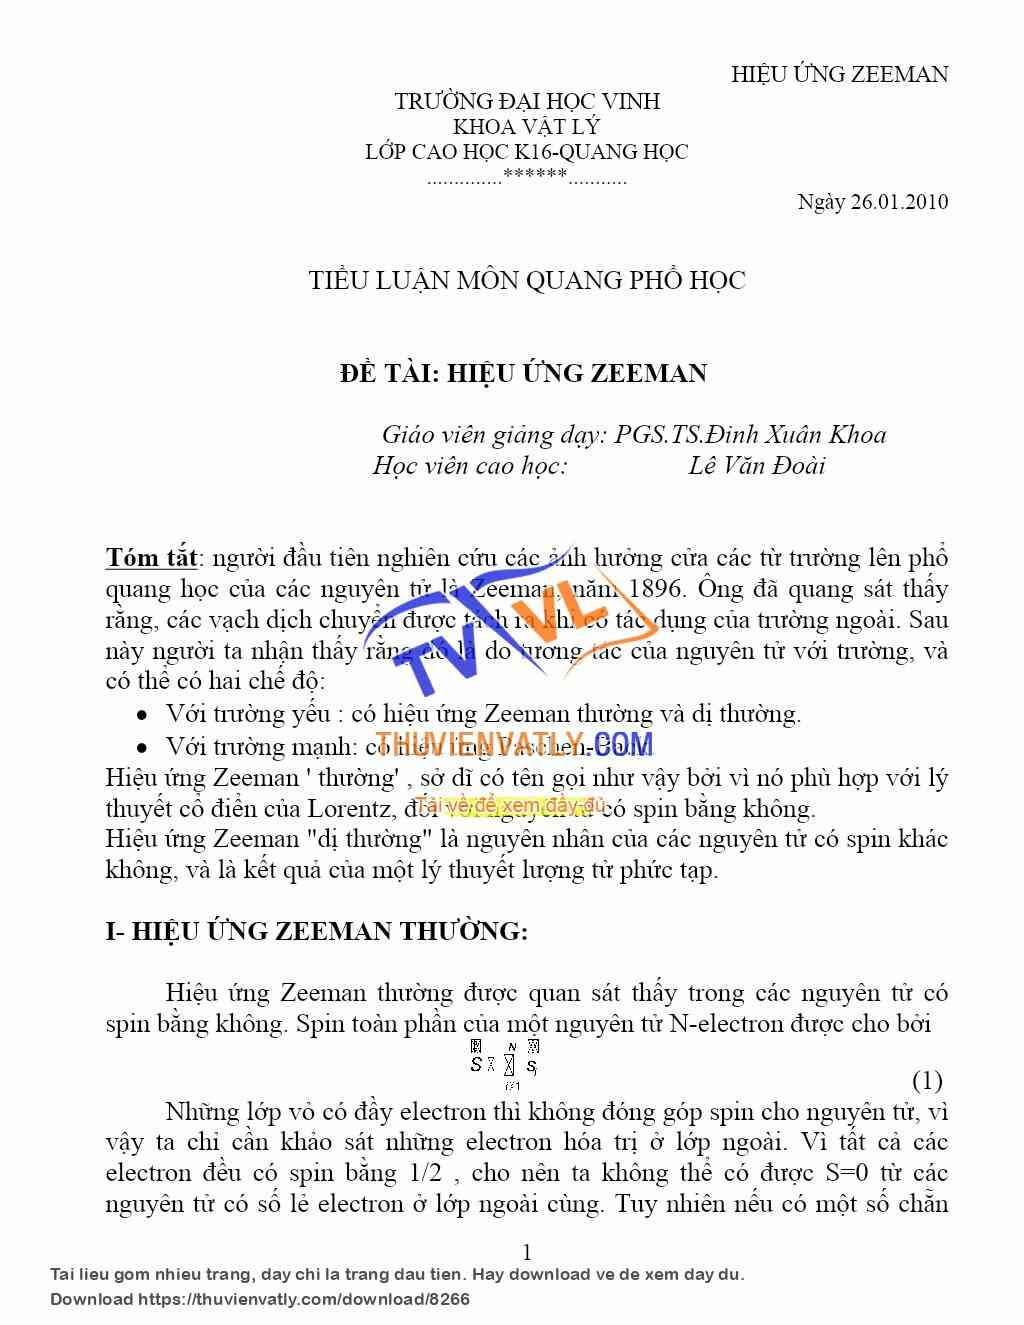 Tìm hiểu hiệu ứng Zeeman